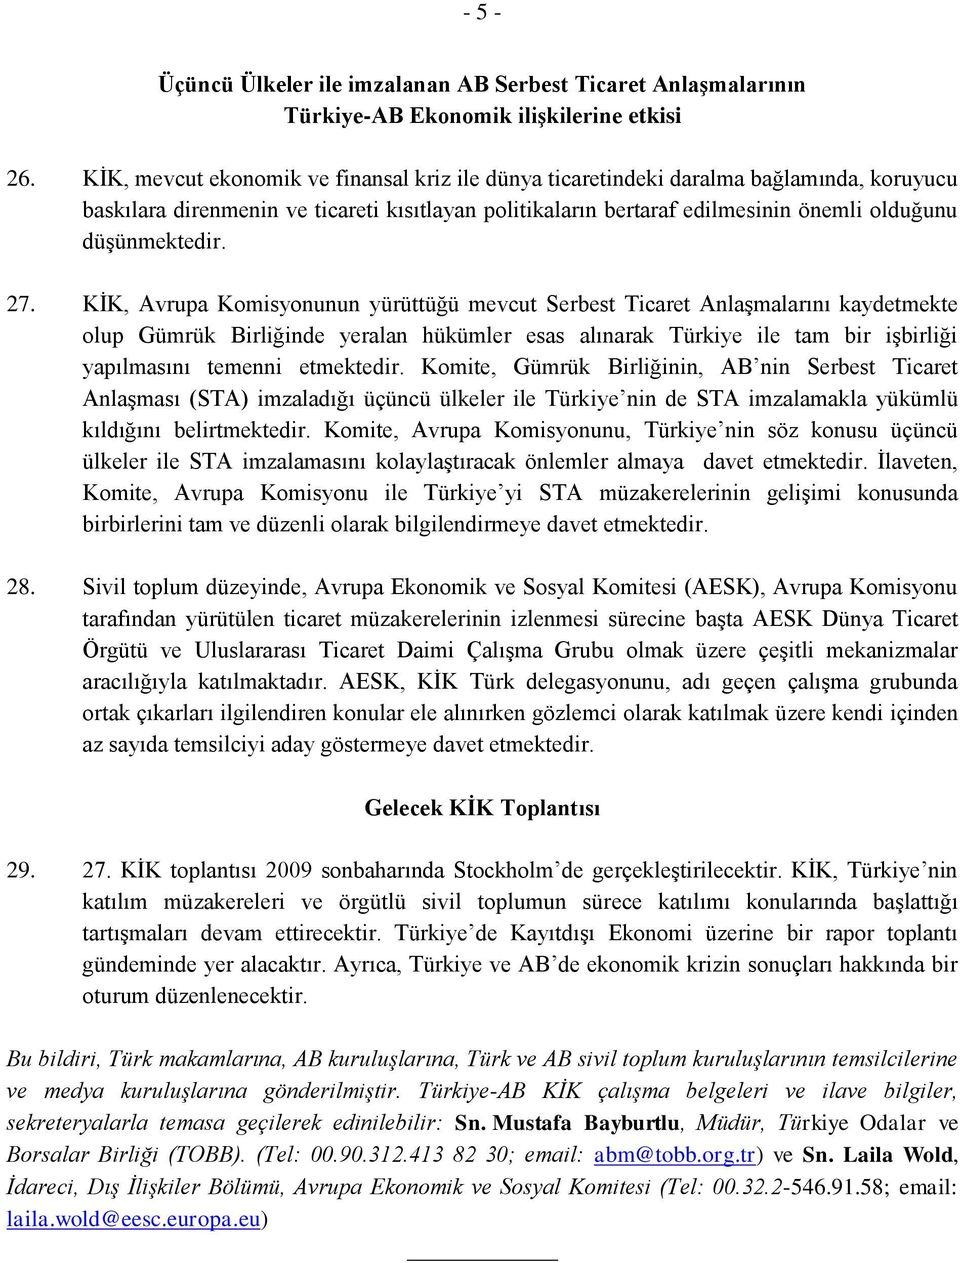 27. KİK, Avrupa Komisyonunun yürüttüğü mevcut Serbest Ticaret Anlaşmalarını kaydetmekte olup Gümrük Birliğinde yeralan hükümler esas alınarak Türkiye ile tam bir işbirliği yapılmasını temenni